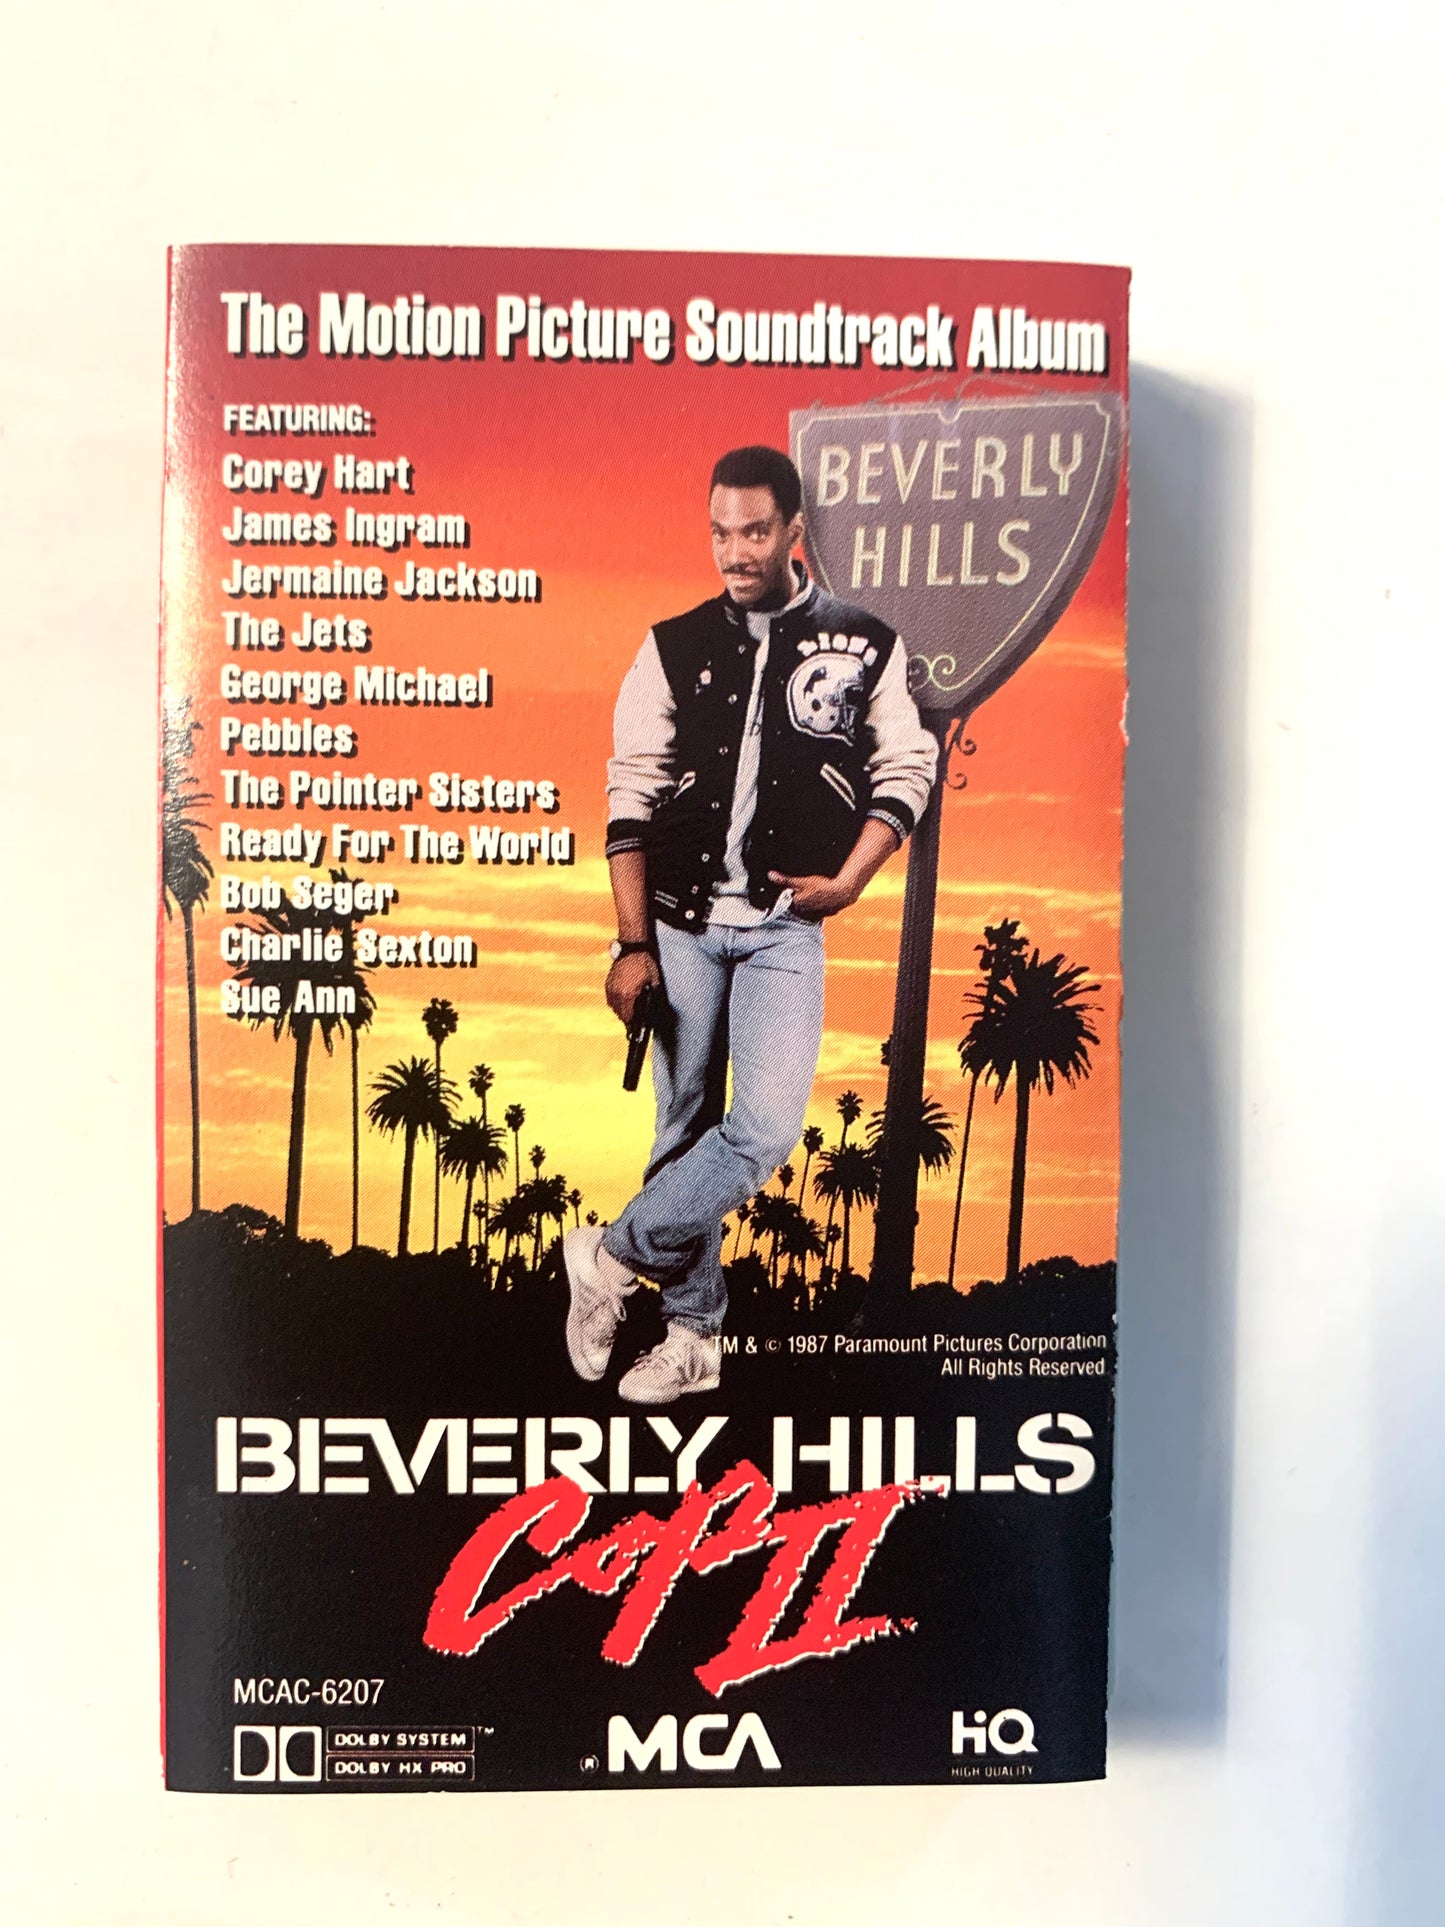 Beverly Hills Cop II soundtrack